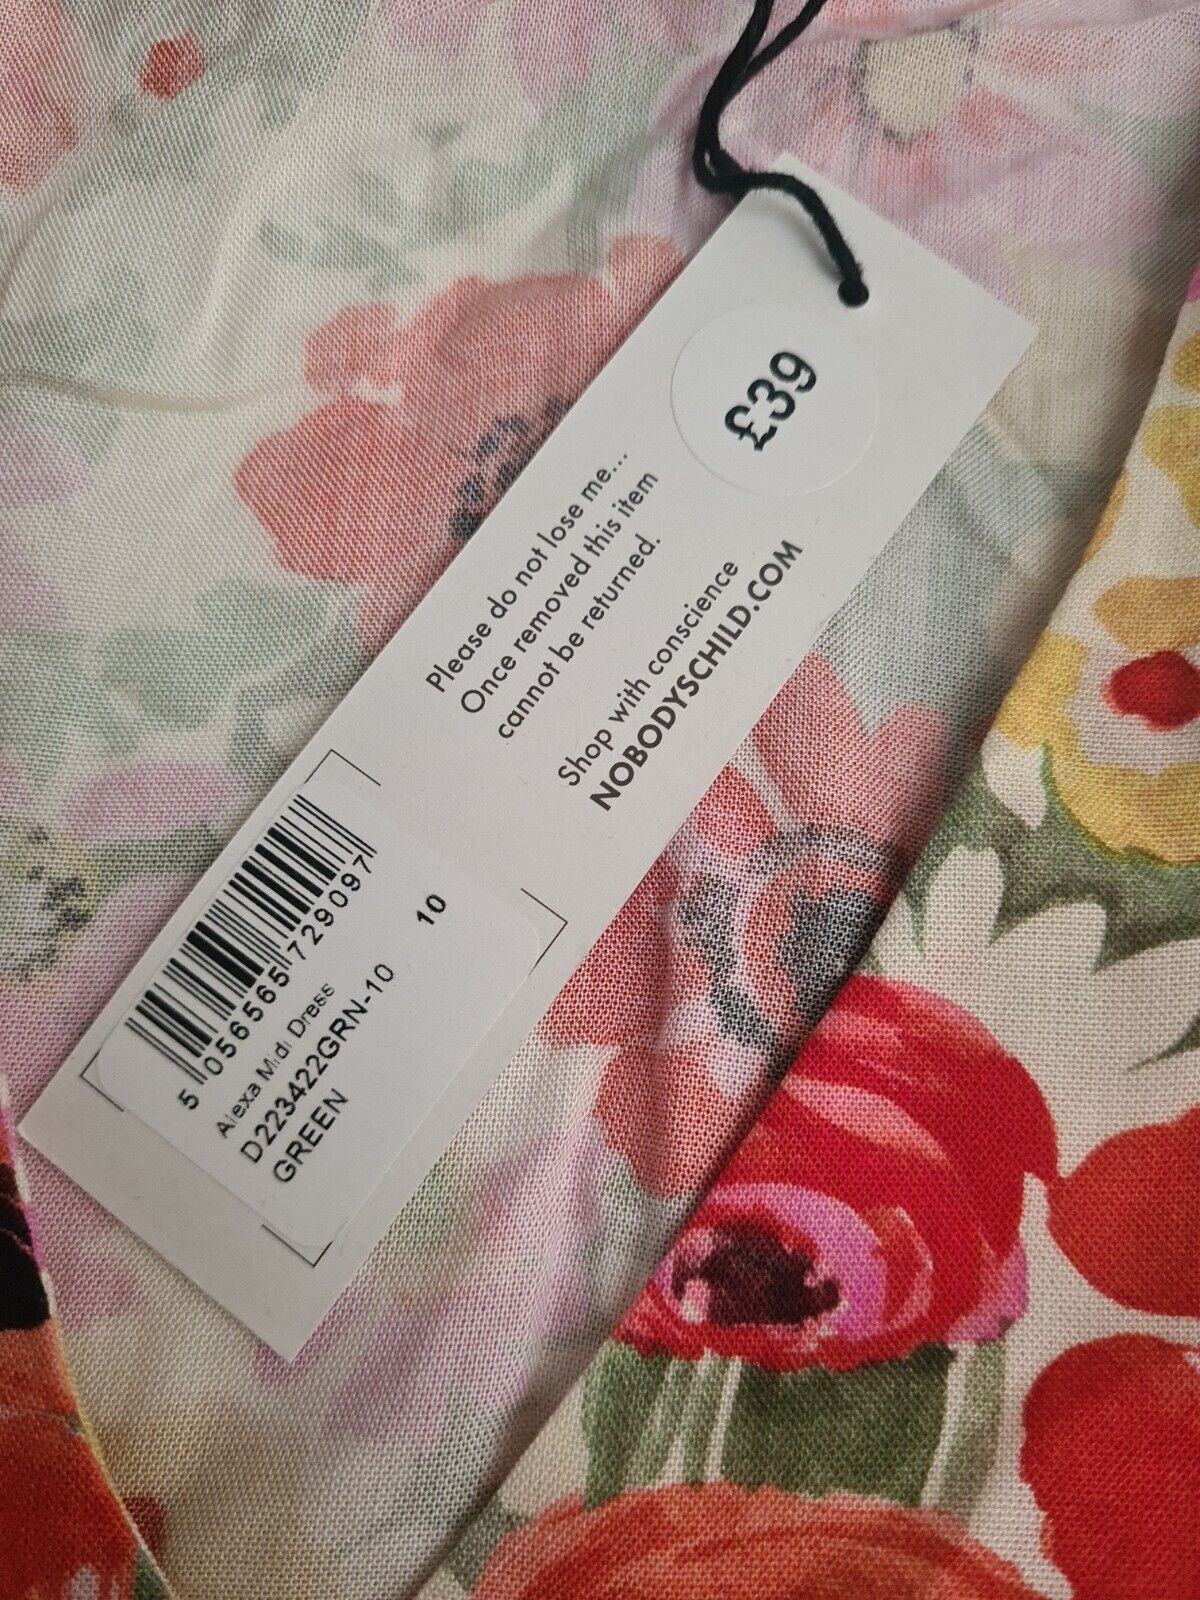 Nobodys Child Alexa Midi Dress Floral Size UK 10 **** V419